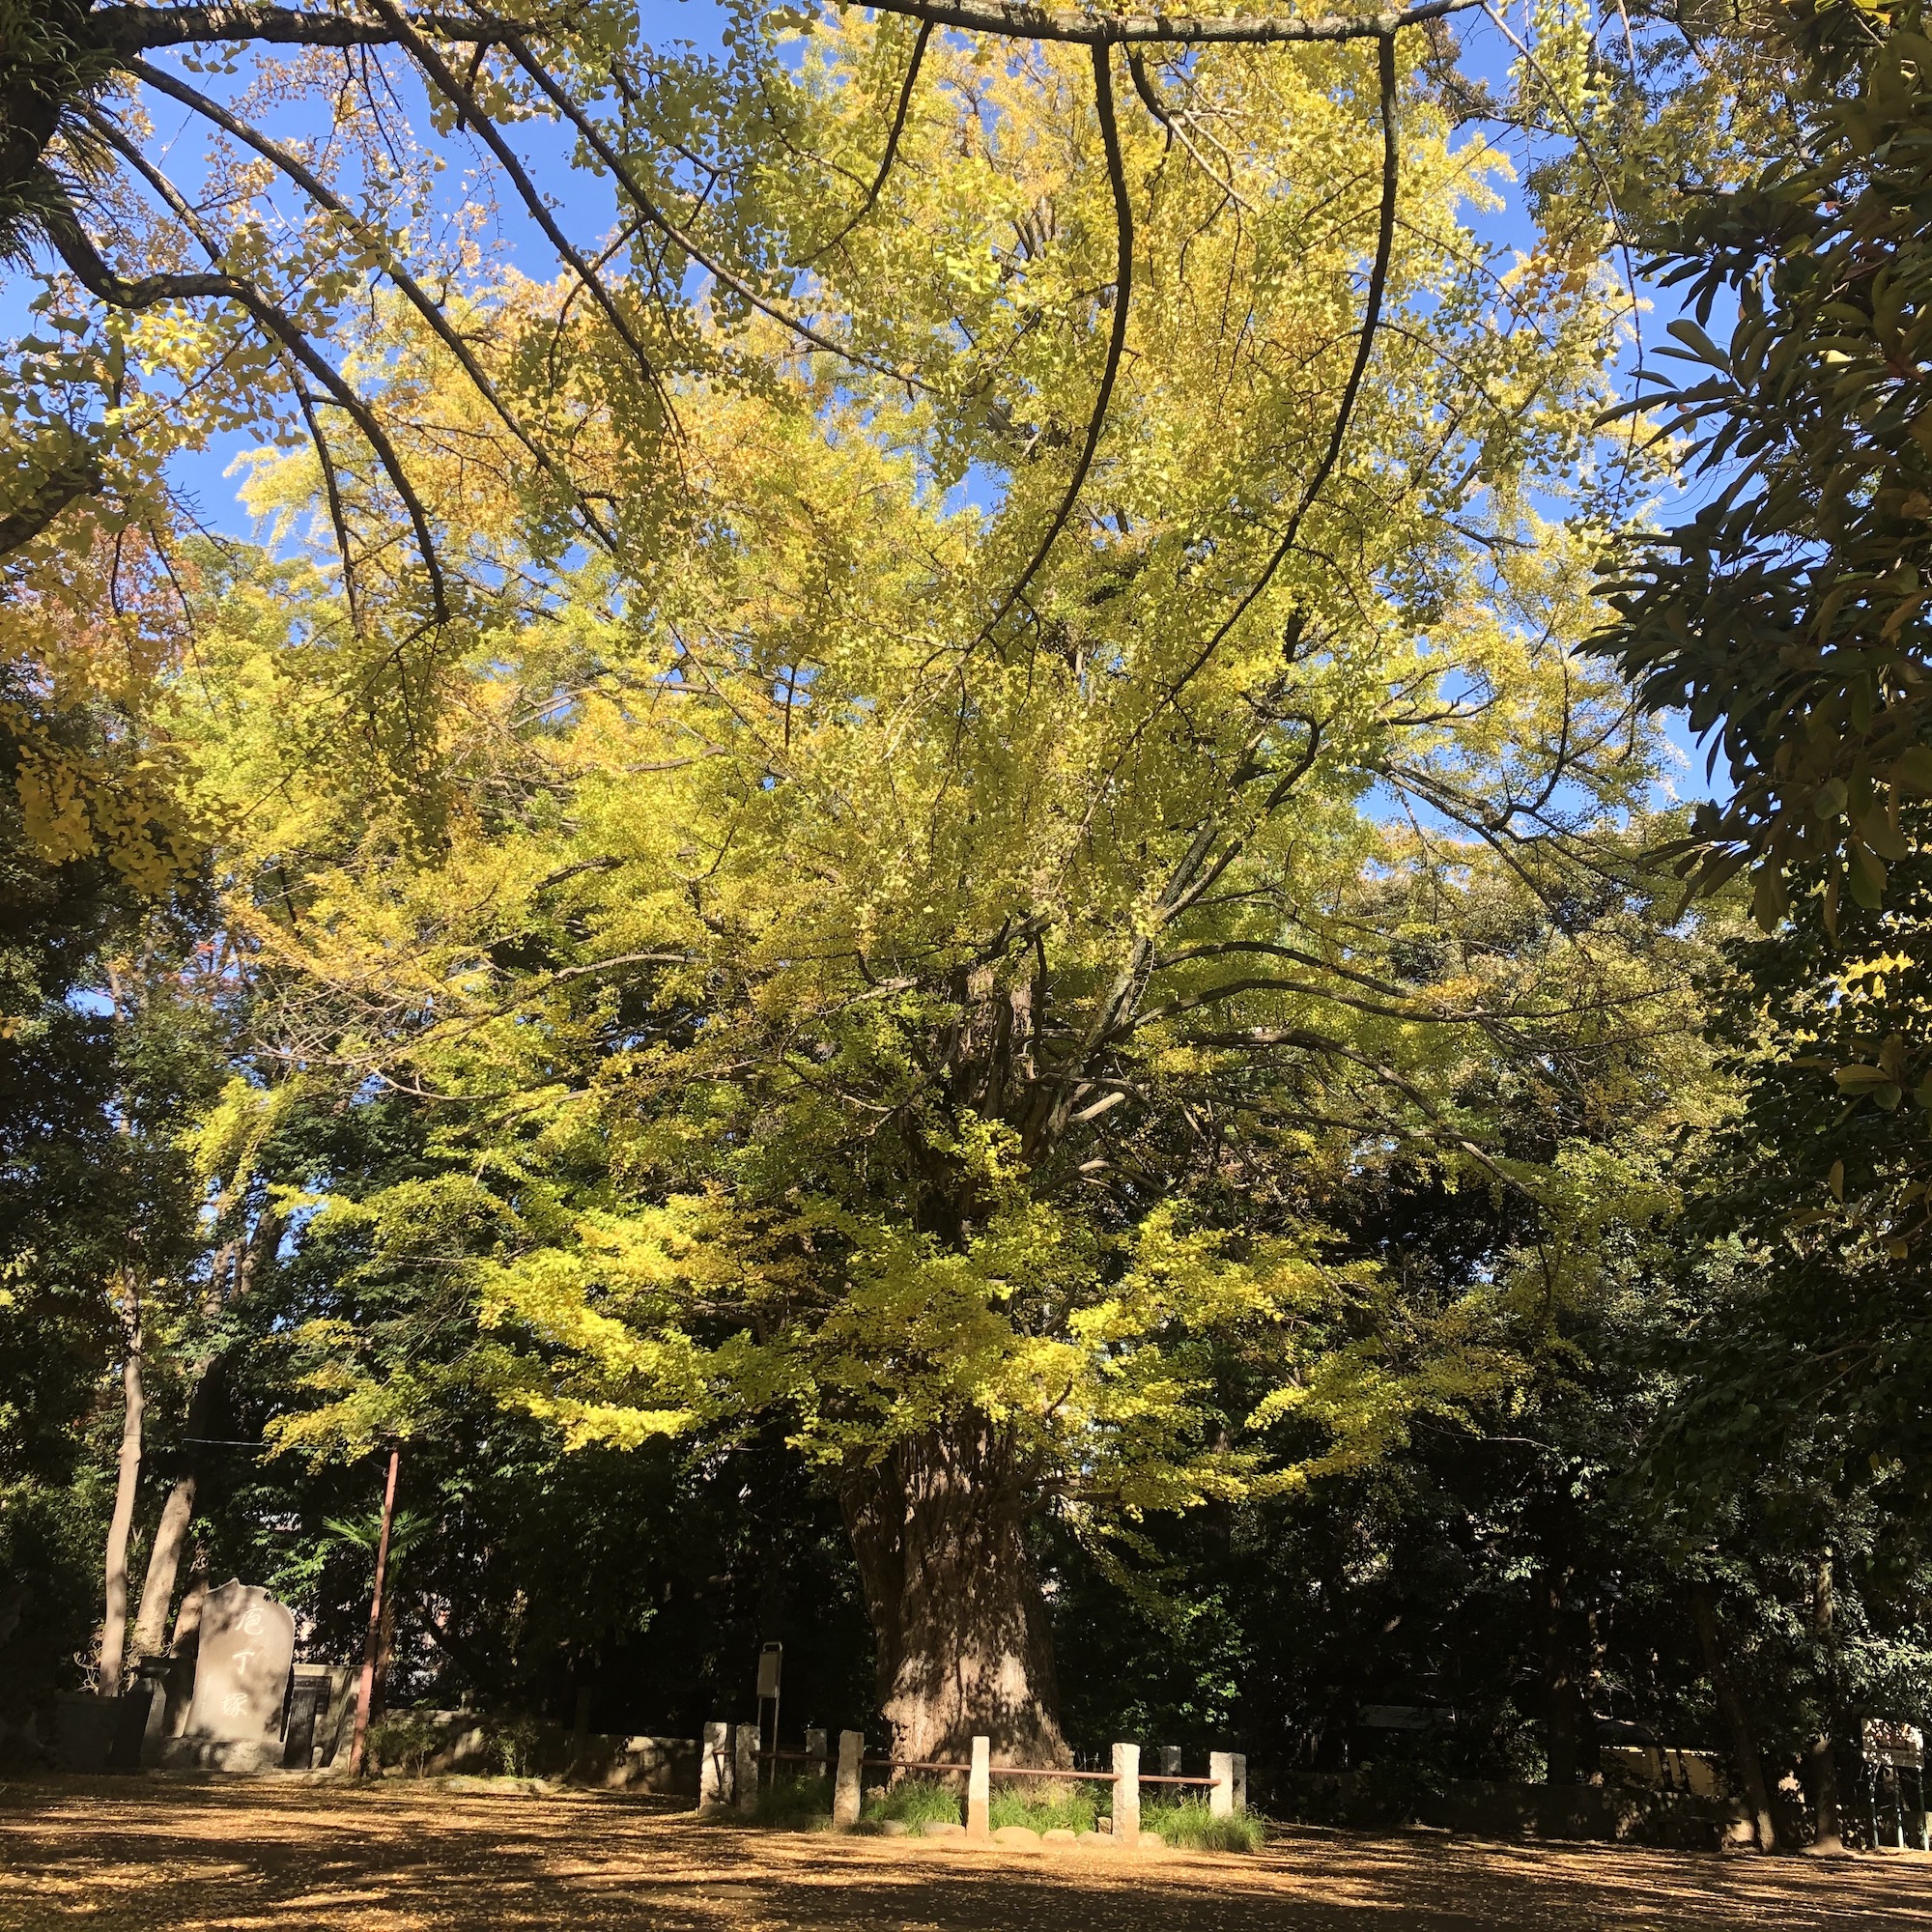 赤坂氷川神社の大銀杏 まだ緑の葉も多く、全体的に黄緑色